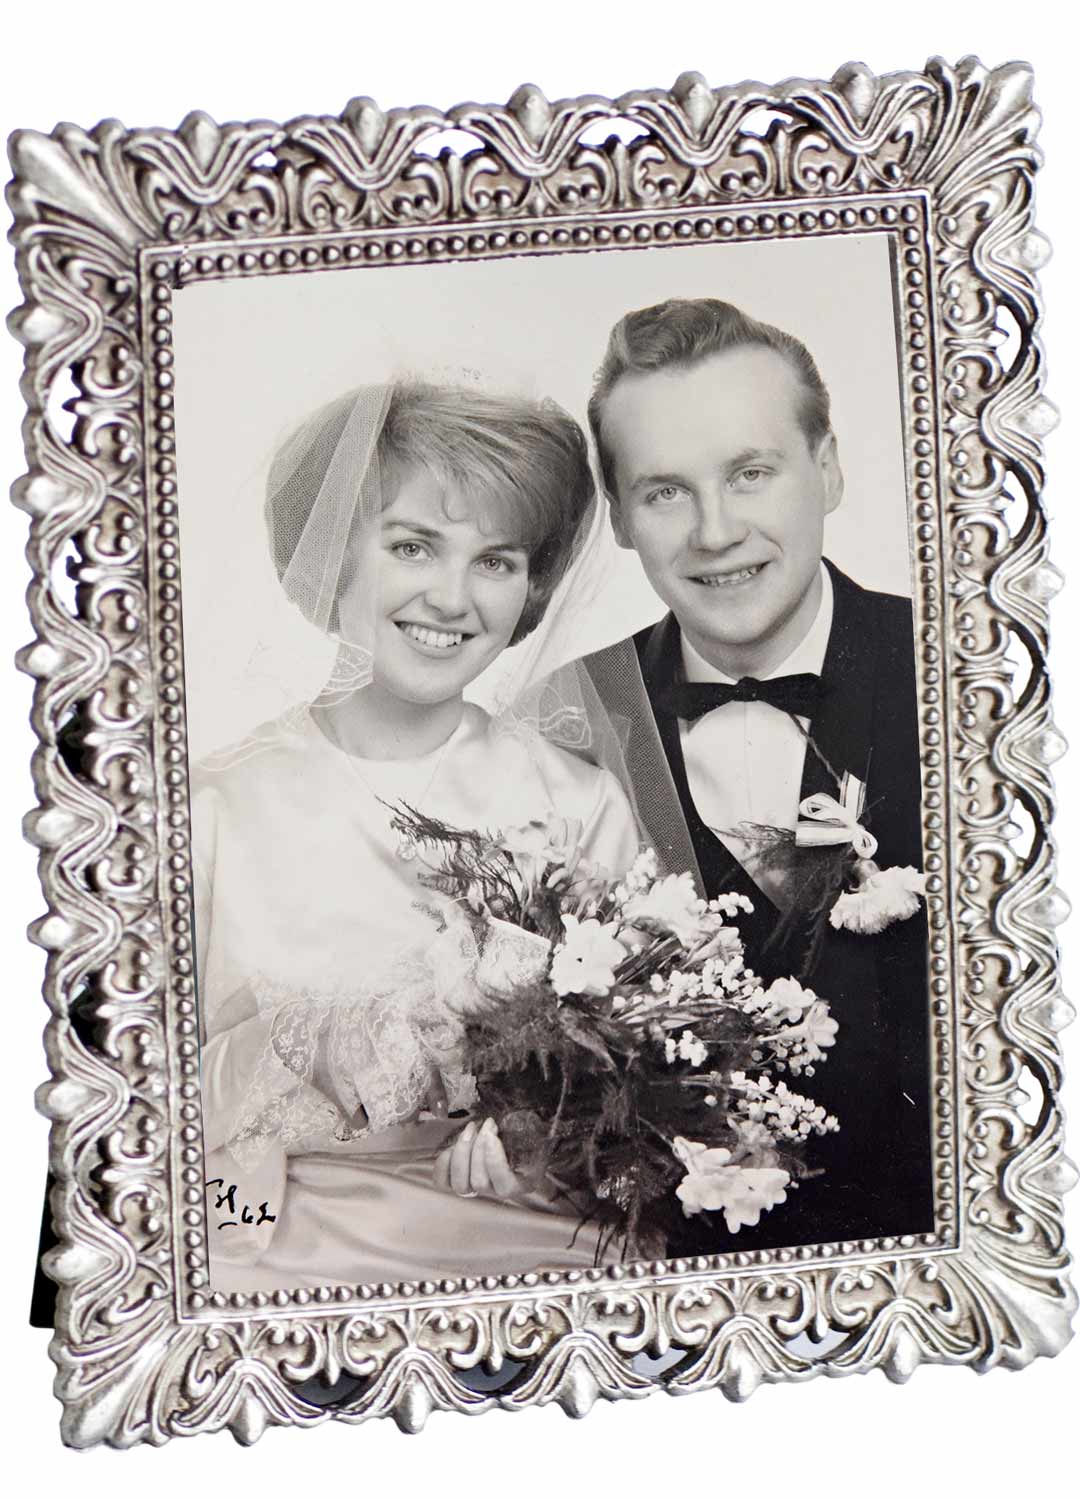 Anna-Liisa ja Jorma avioituivat parikymppisinä keväällä 1961. Yhteiselo alkoi jo teini-iässä.